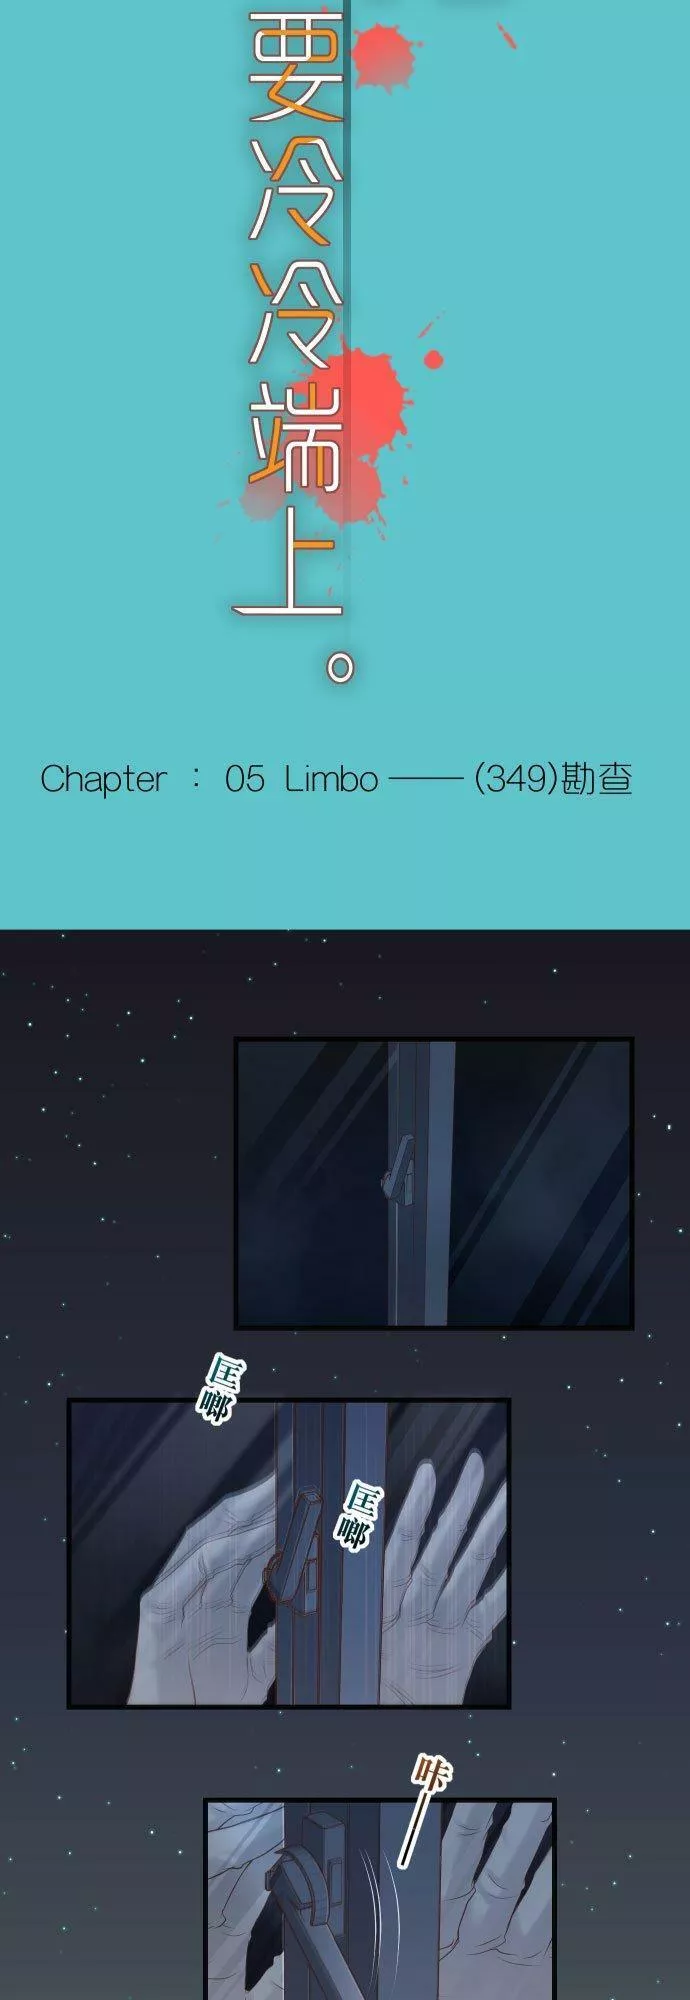 第五章 Limbo 349： ：勘查1